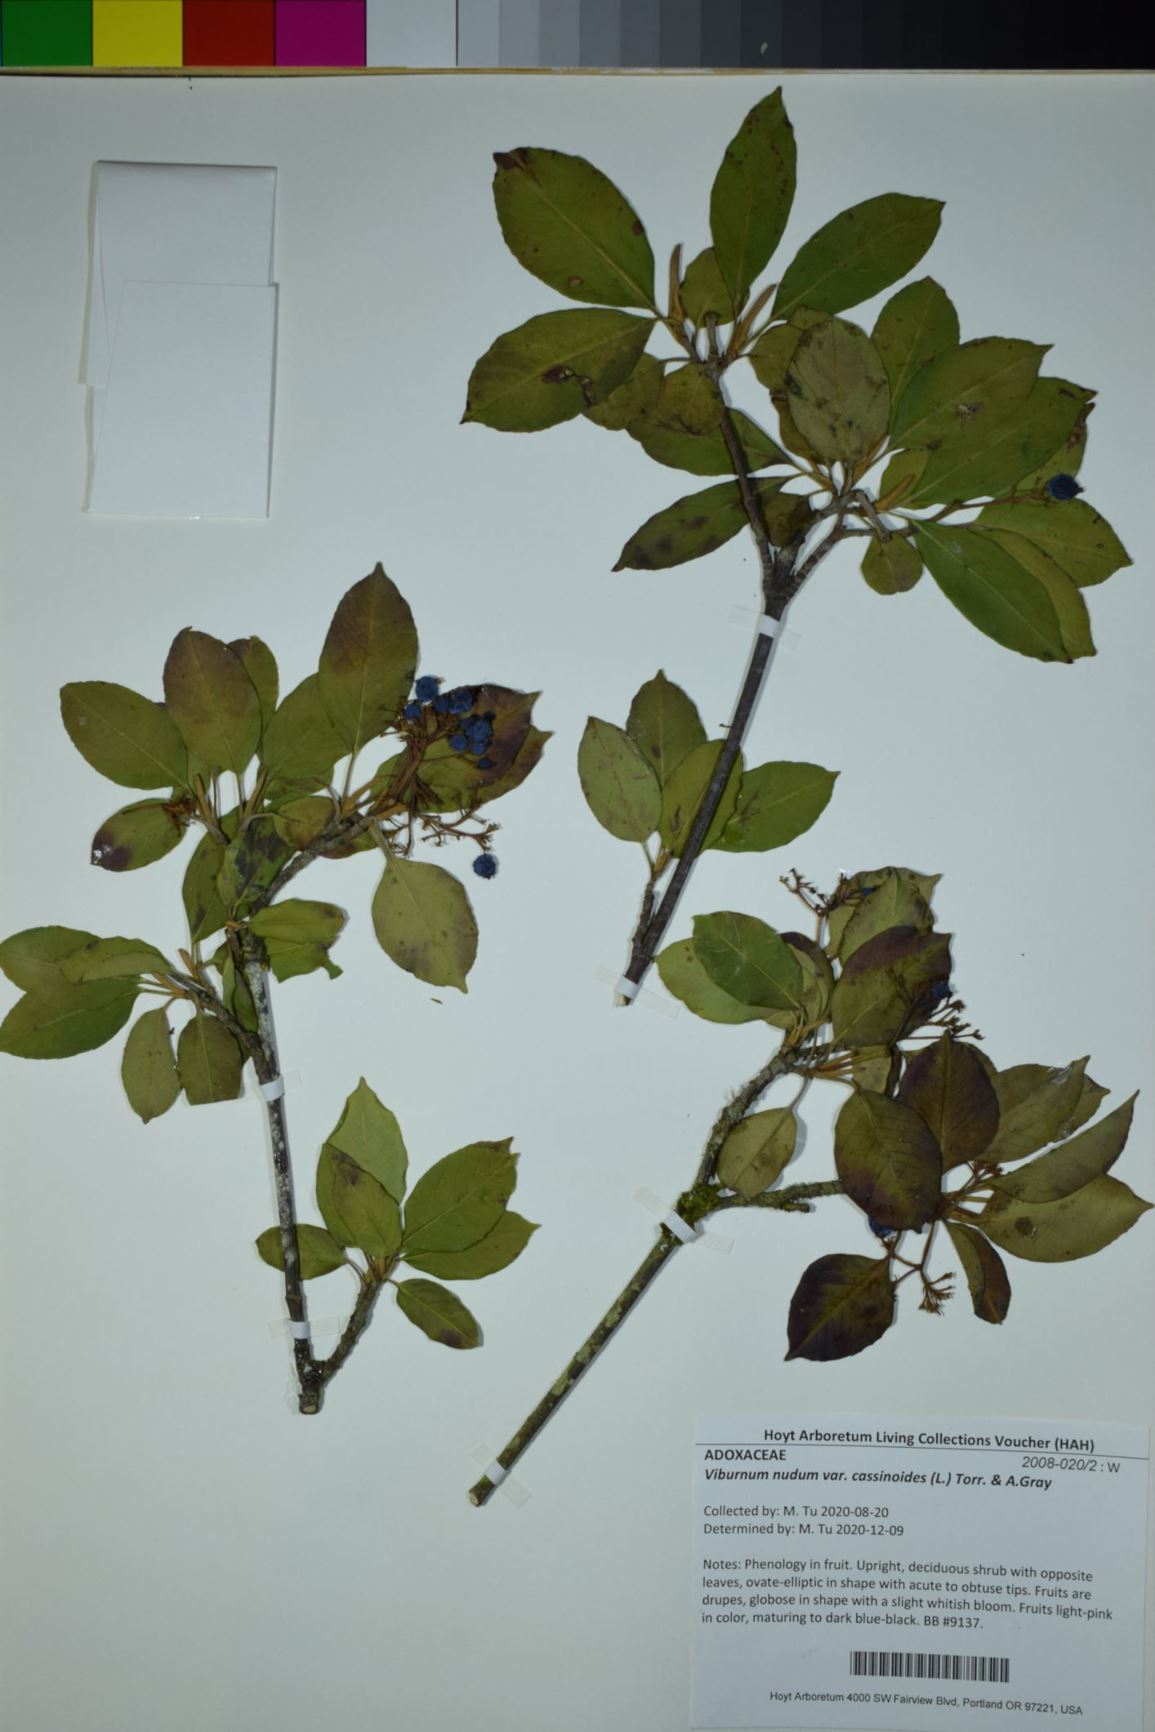 Viburnum nudum var. cassinoides - withe-rod, possumhaw